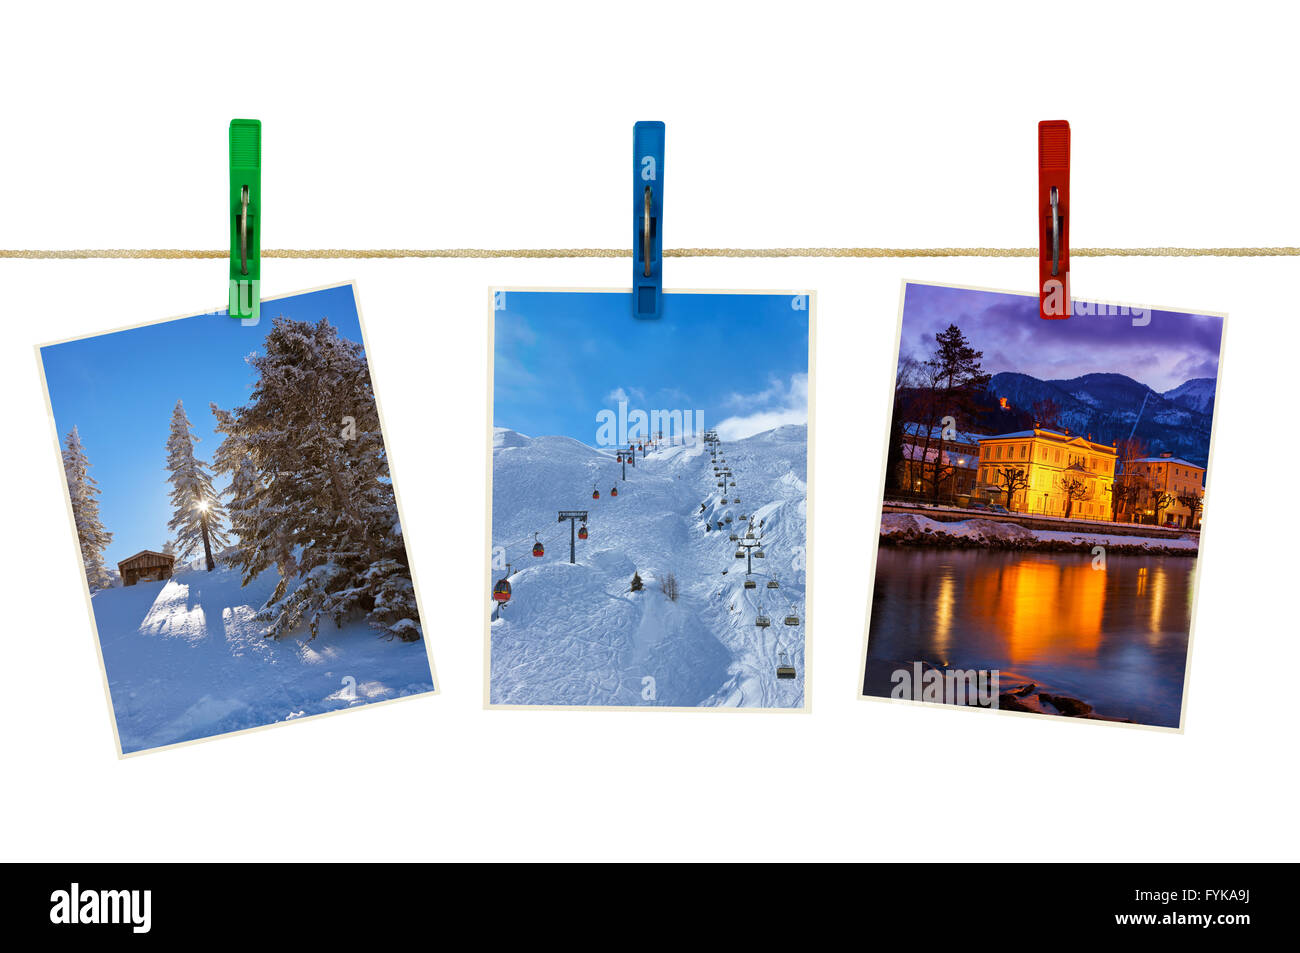 Austria mountains ski photography on clothespins Stock Photo